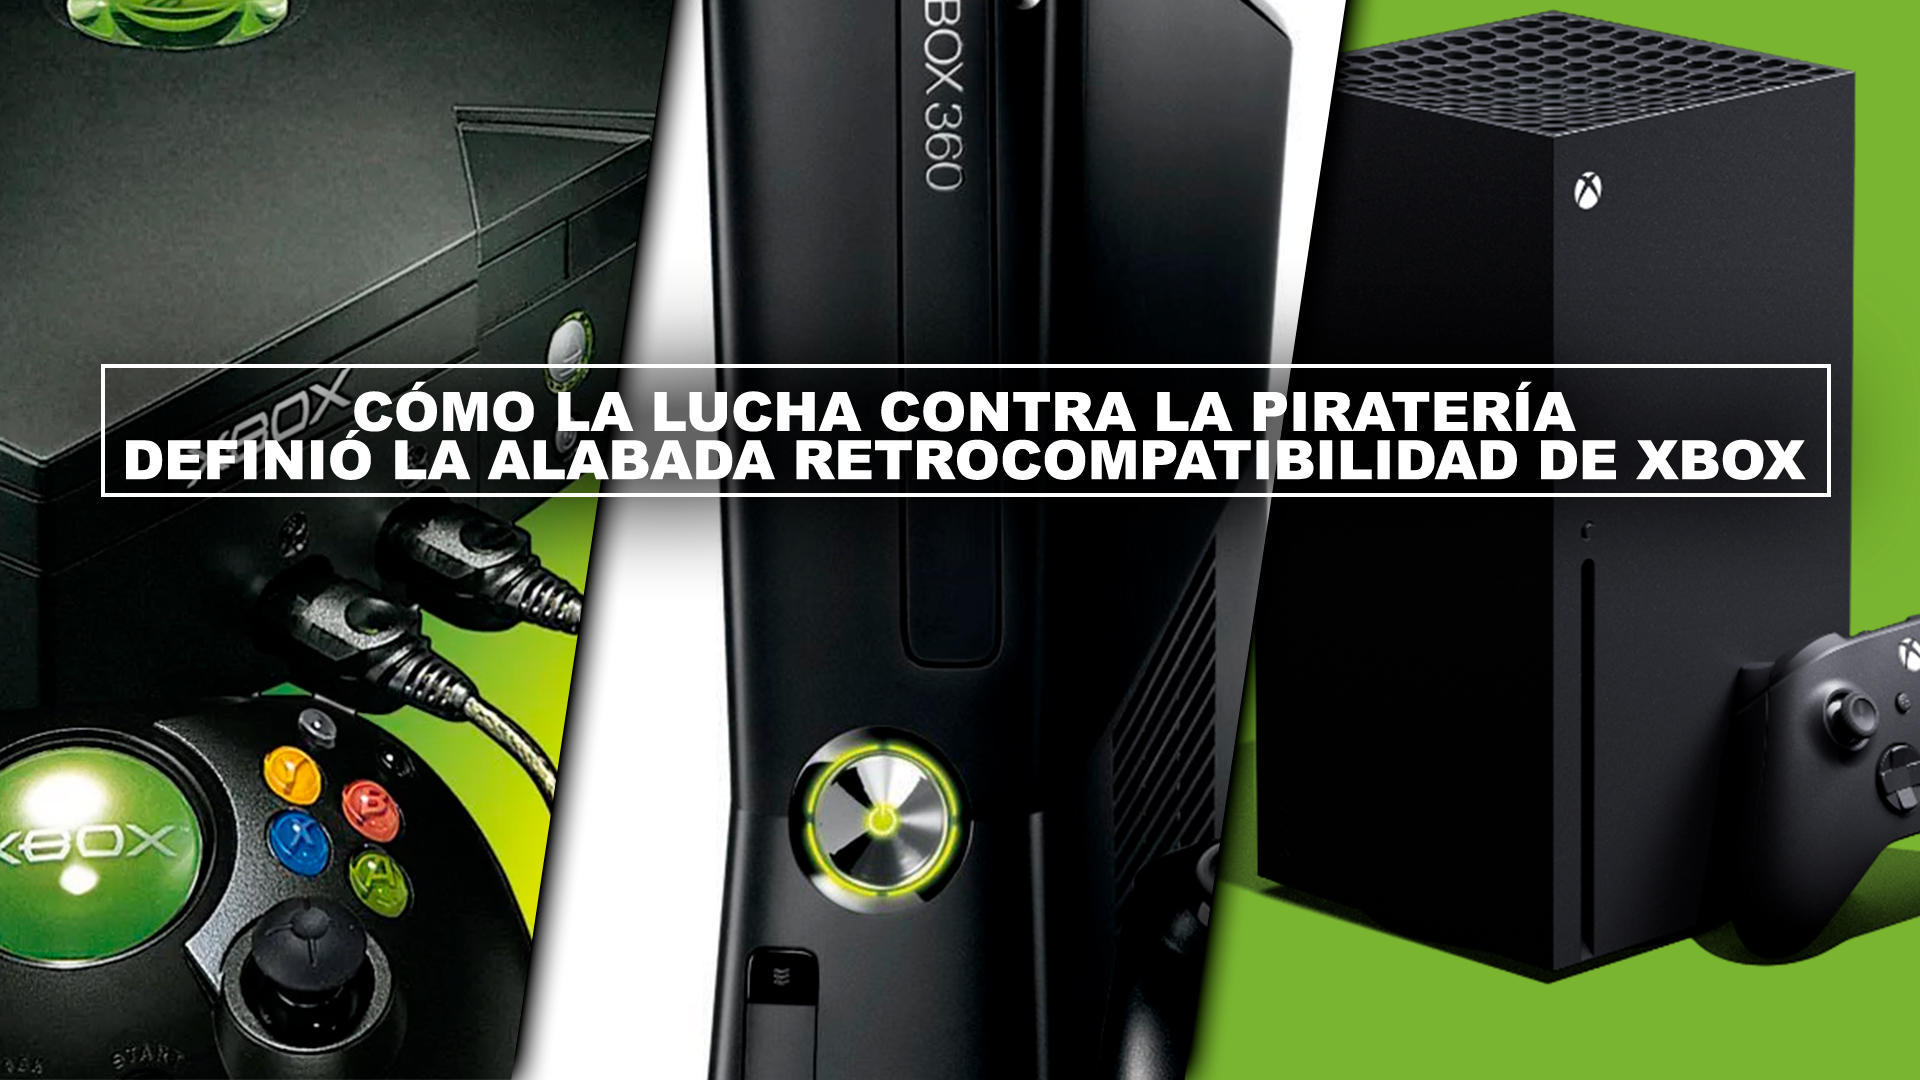 Cómo la lucha contra la piratería definió la alabada retrocompatibilidad Xbox